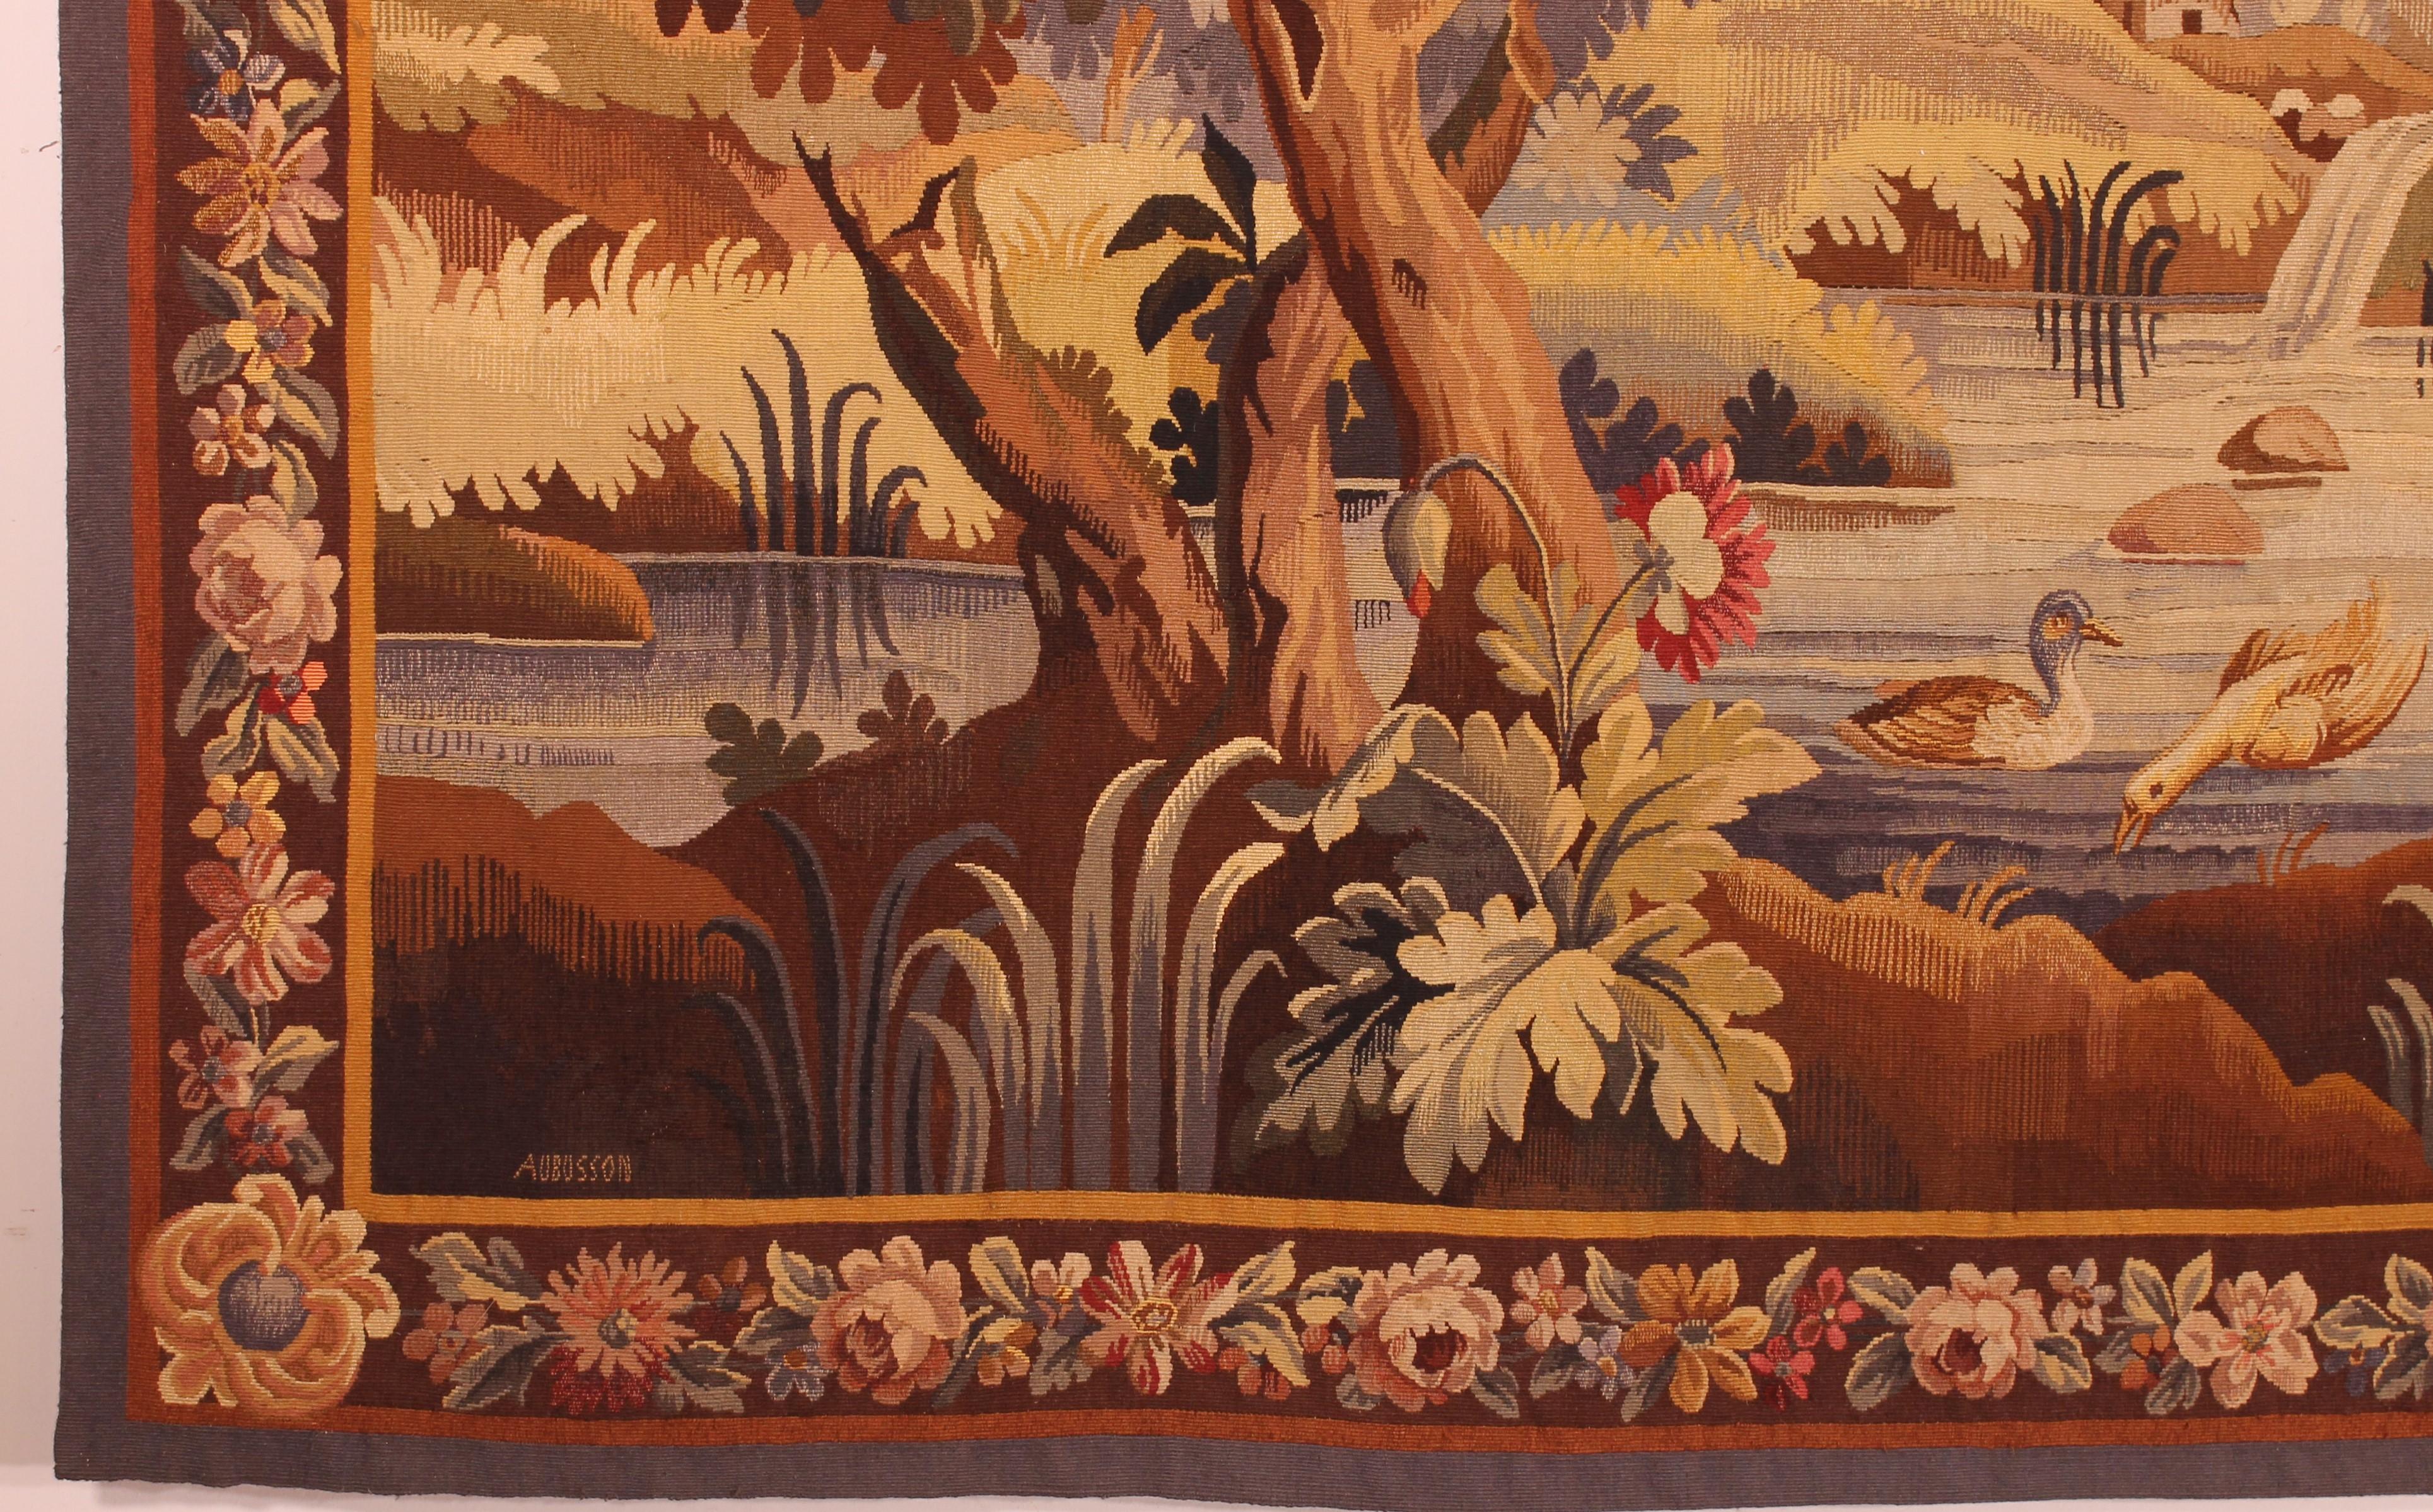 Très belle tapisserie signée Aubusson du 19ème siècle
Très belle verdure composée de nombreux arbres, d'animaux et d'une maison en arrière-plan
Belle perspective et dimensions très faciles à placer

La tapisserie est en très bon état et a conservé